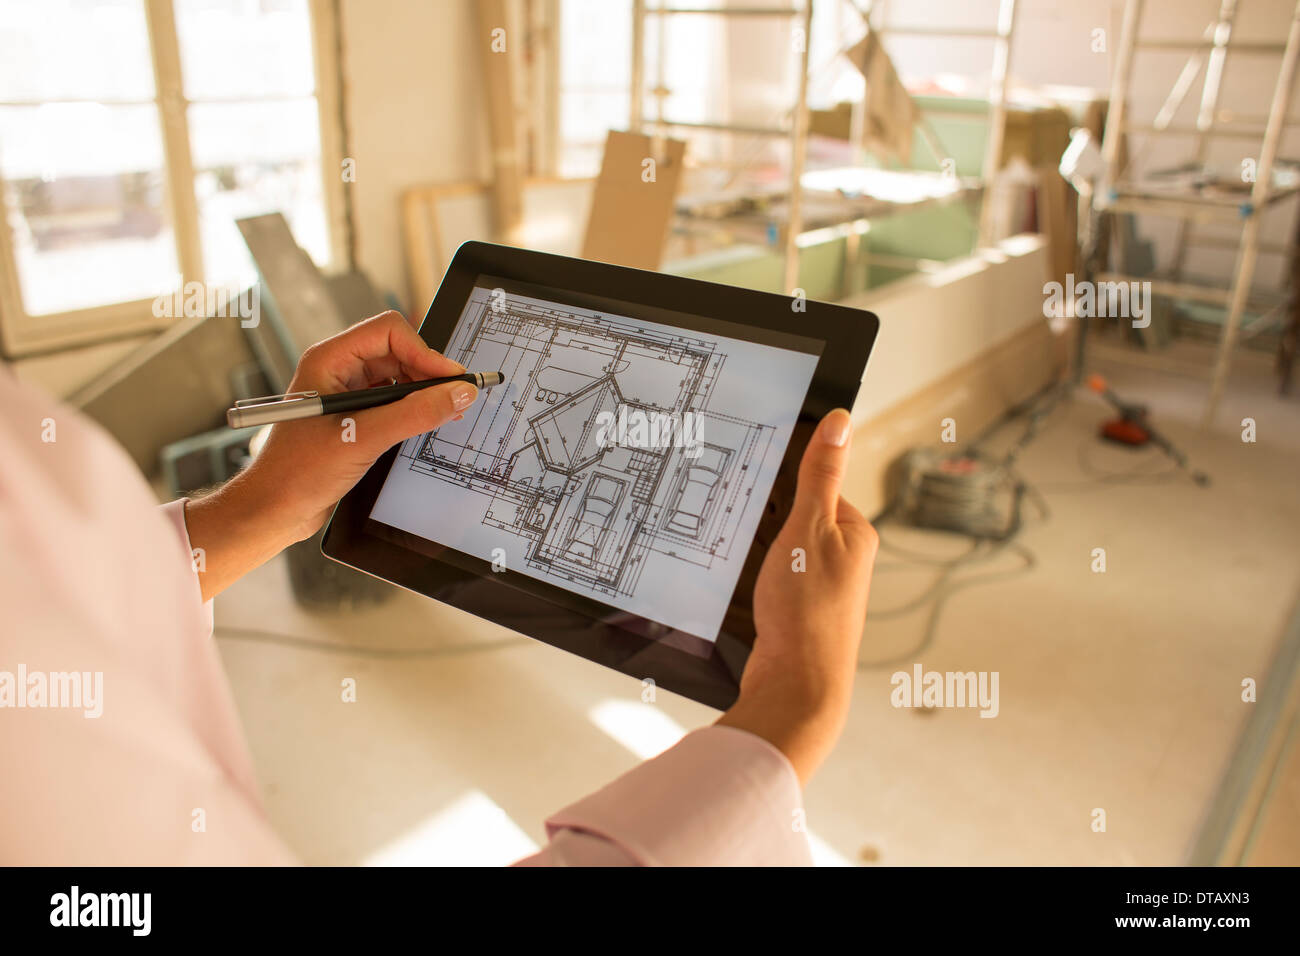 Architektin Frau zeichnen mit Stift auf elektronische Tablet in Baustelle Stockfoto